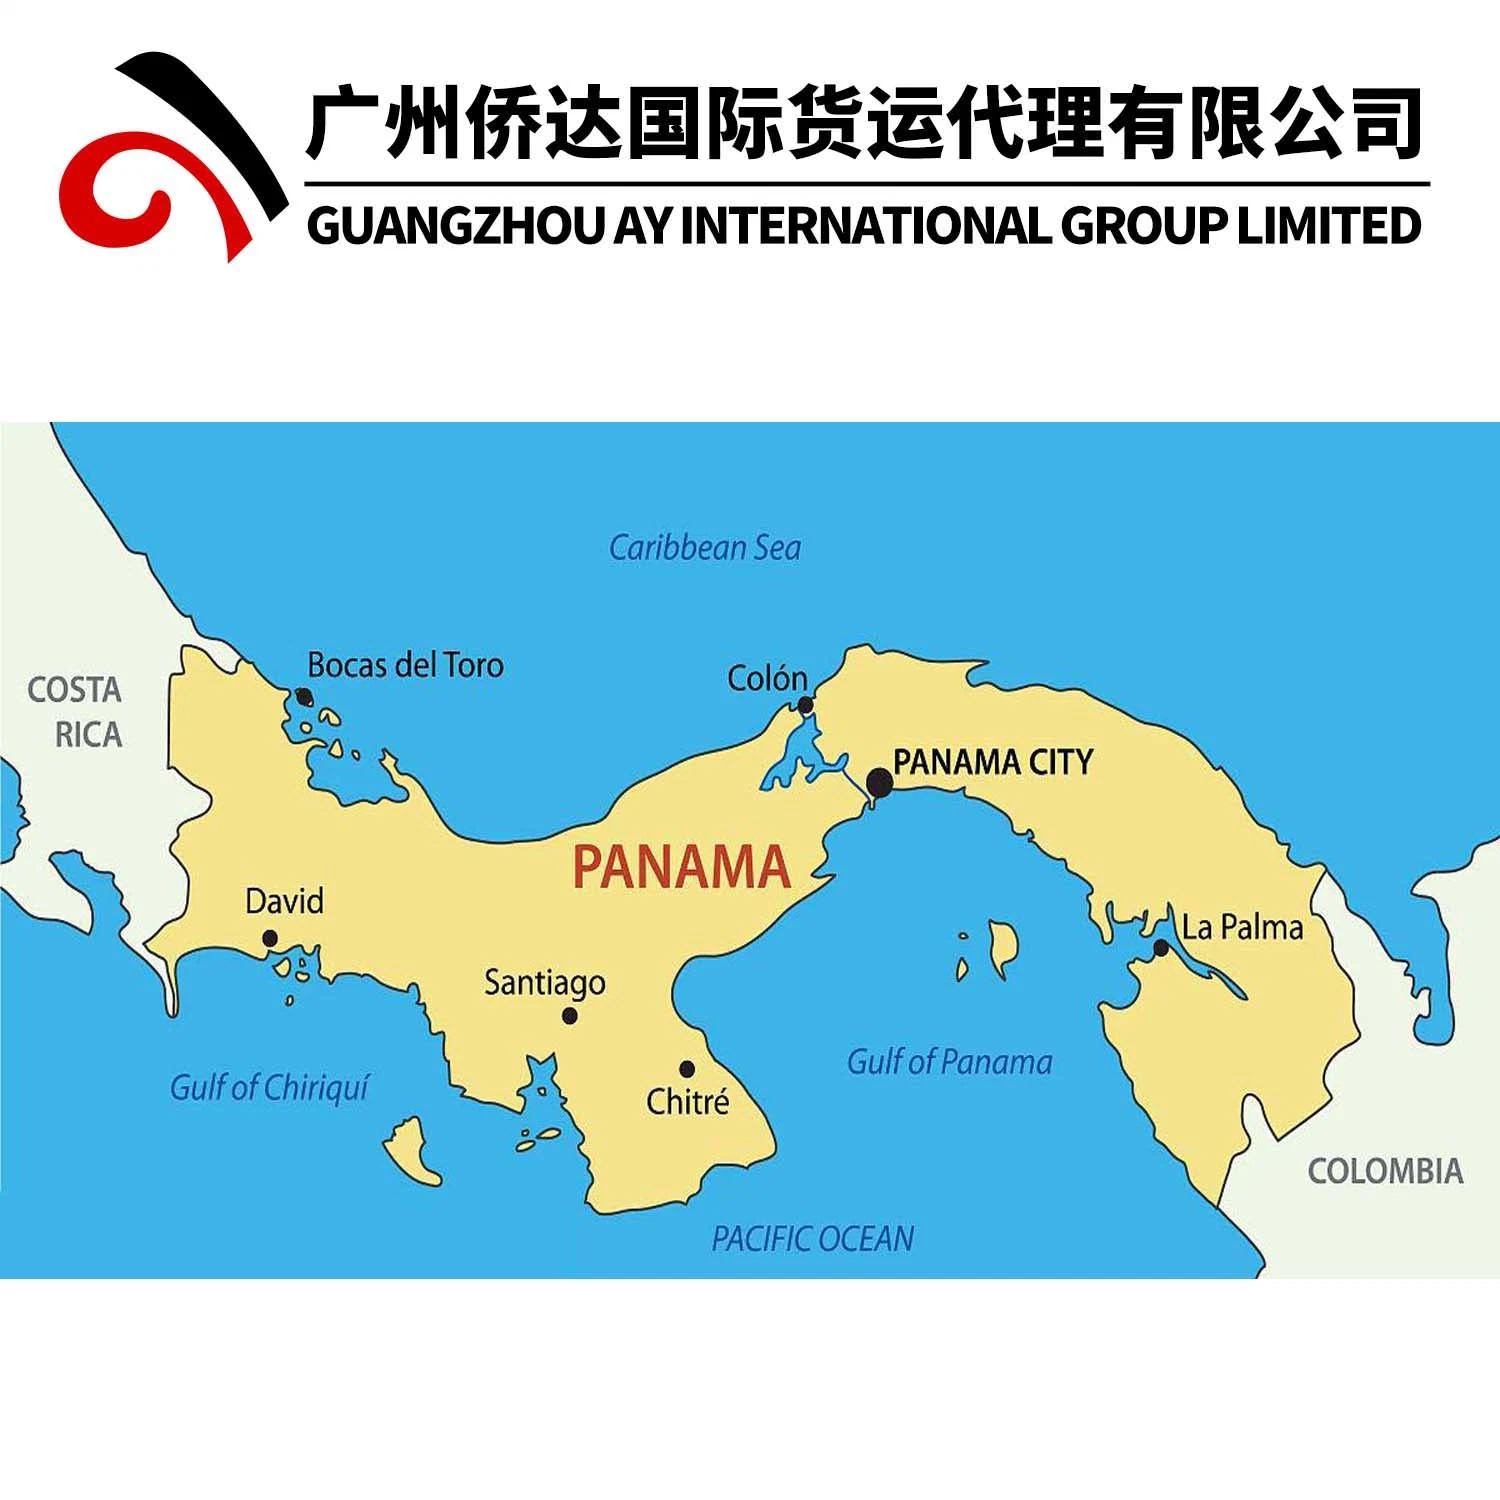 مورد خدمة النقل والإمداد في الصين إلى كوستاريكا/بنما/كولومبيا بواسطة شركة Air